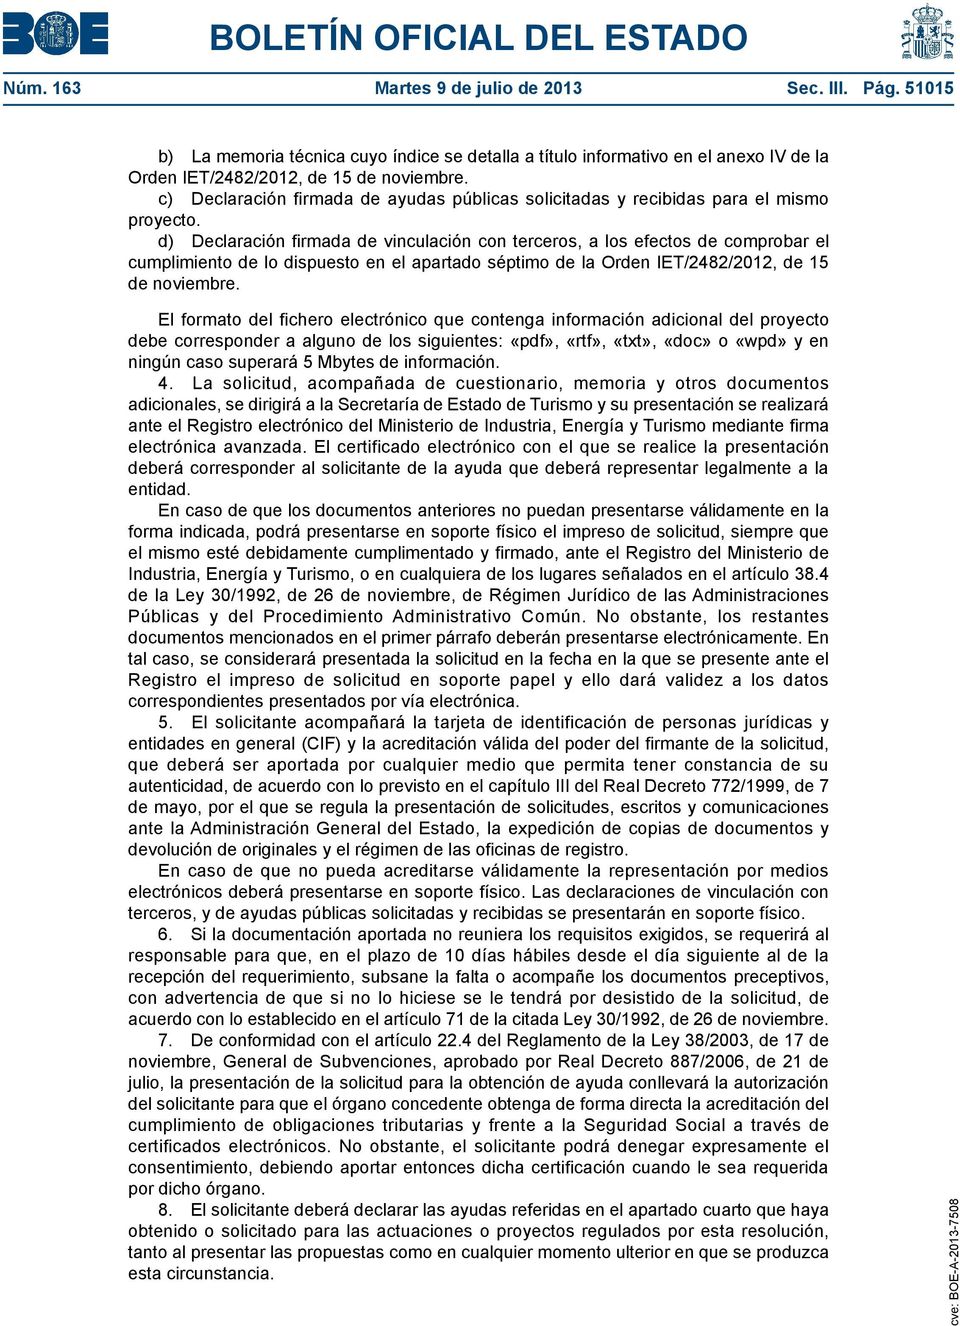 d) Declaración firmada de vinculación con terceros, a los efectos de comprobar el cumplimiento de lo dispuesto en el apartado séptimo de la Orden IET/2482/2012, de 15 de noviembre.